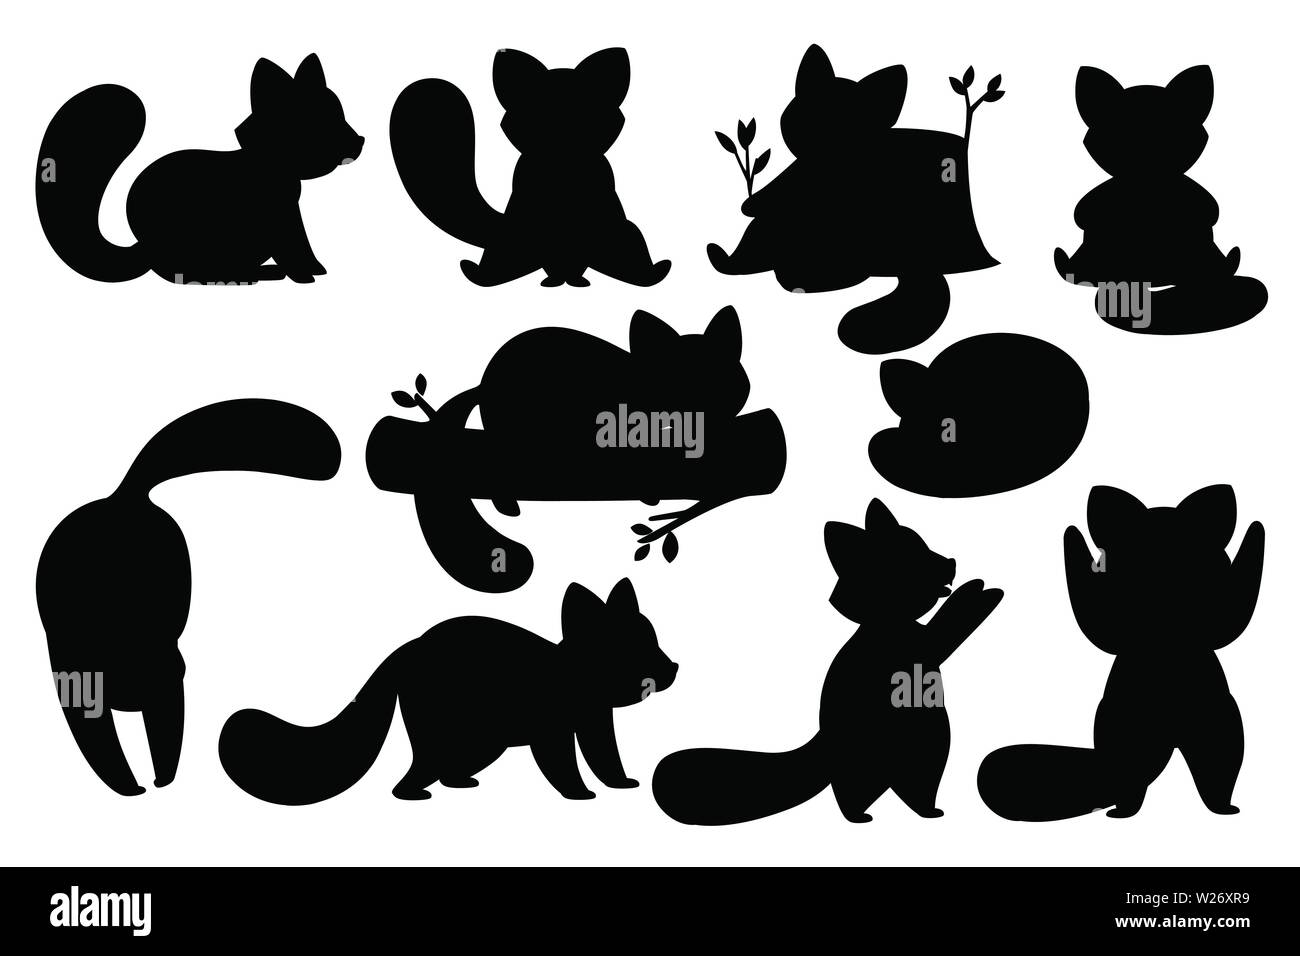 Schwarze Silhouette von cute adorable red Panda in unterschiedlichen Posen cartoon design Tier Charakter flachbild Vektor stil Abbildung auf weißen Hintergrund. Stock Vektor